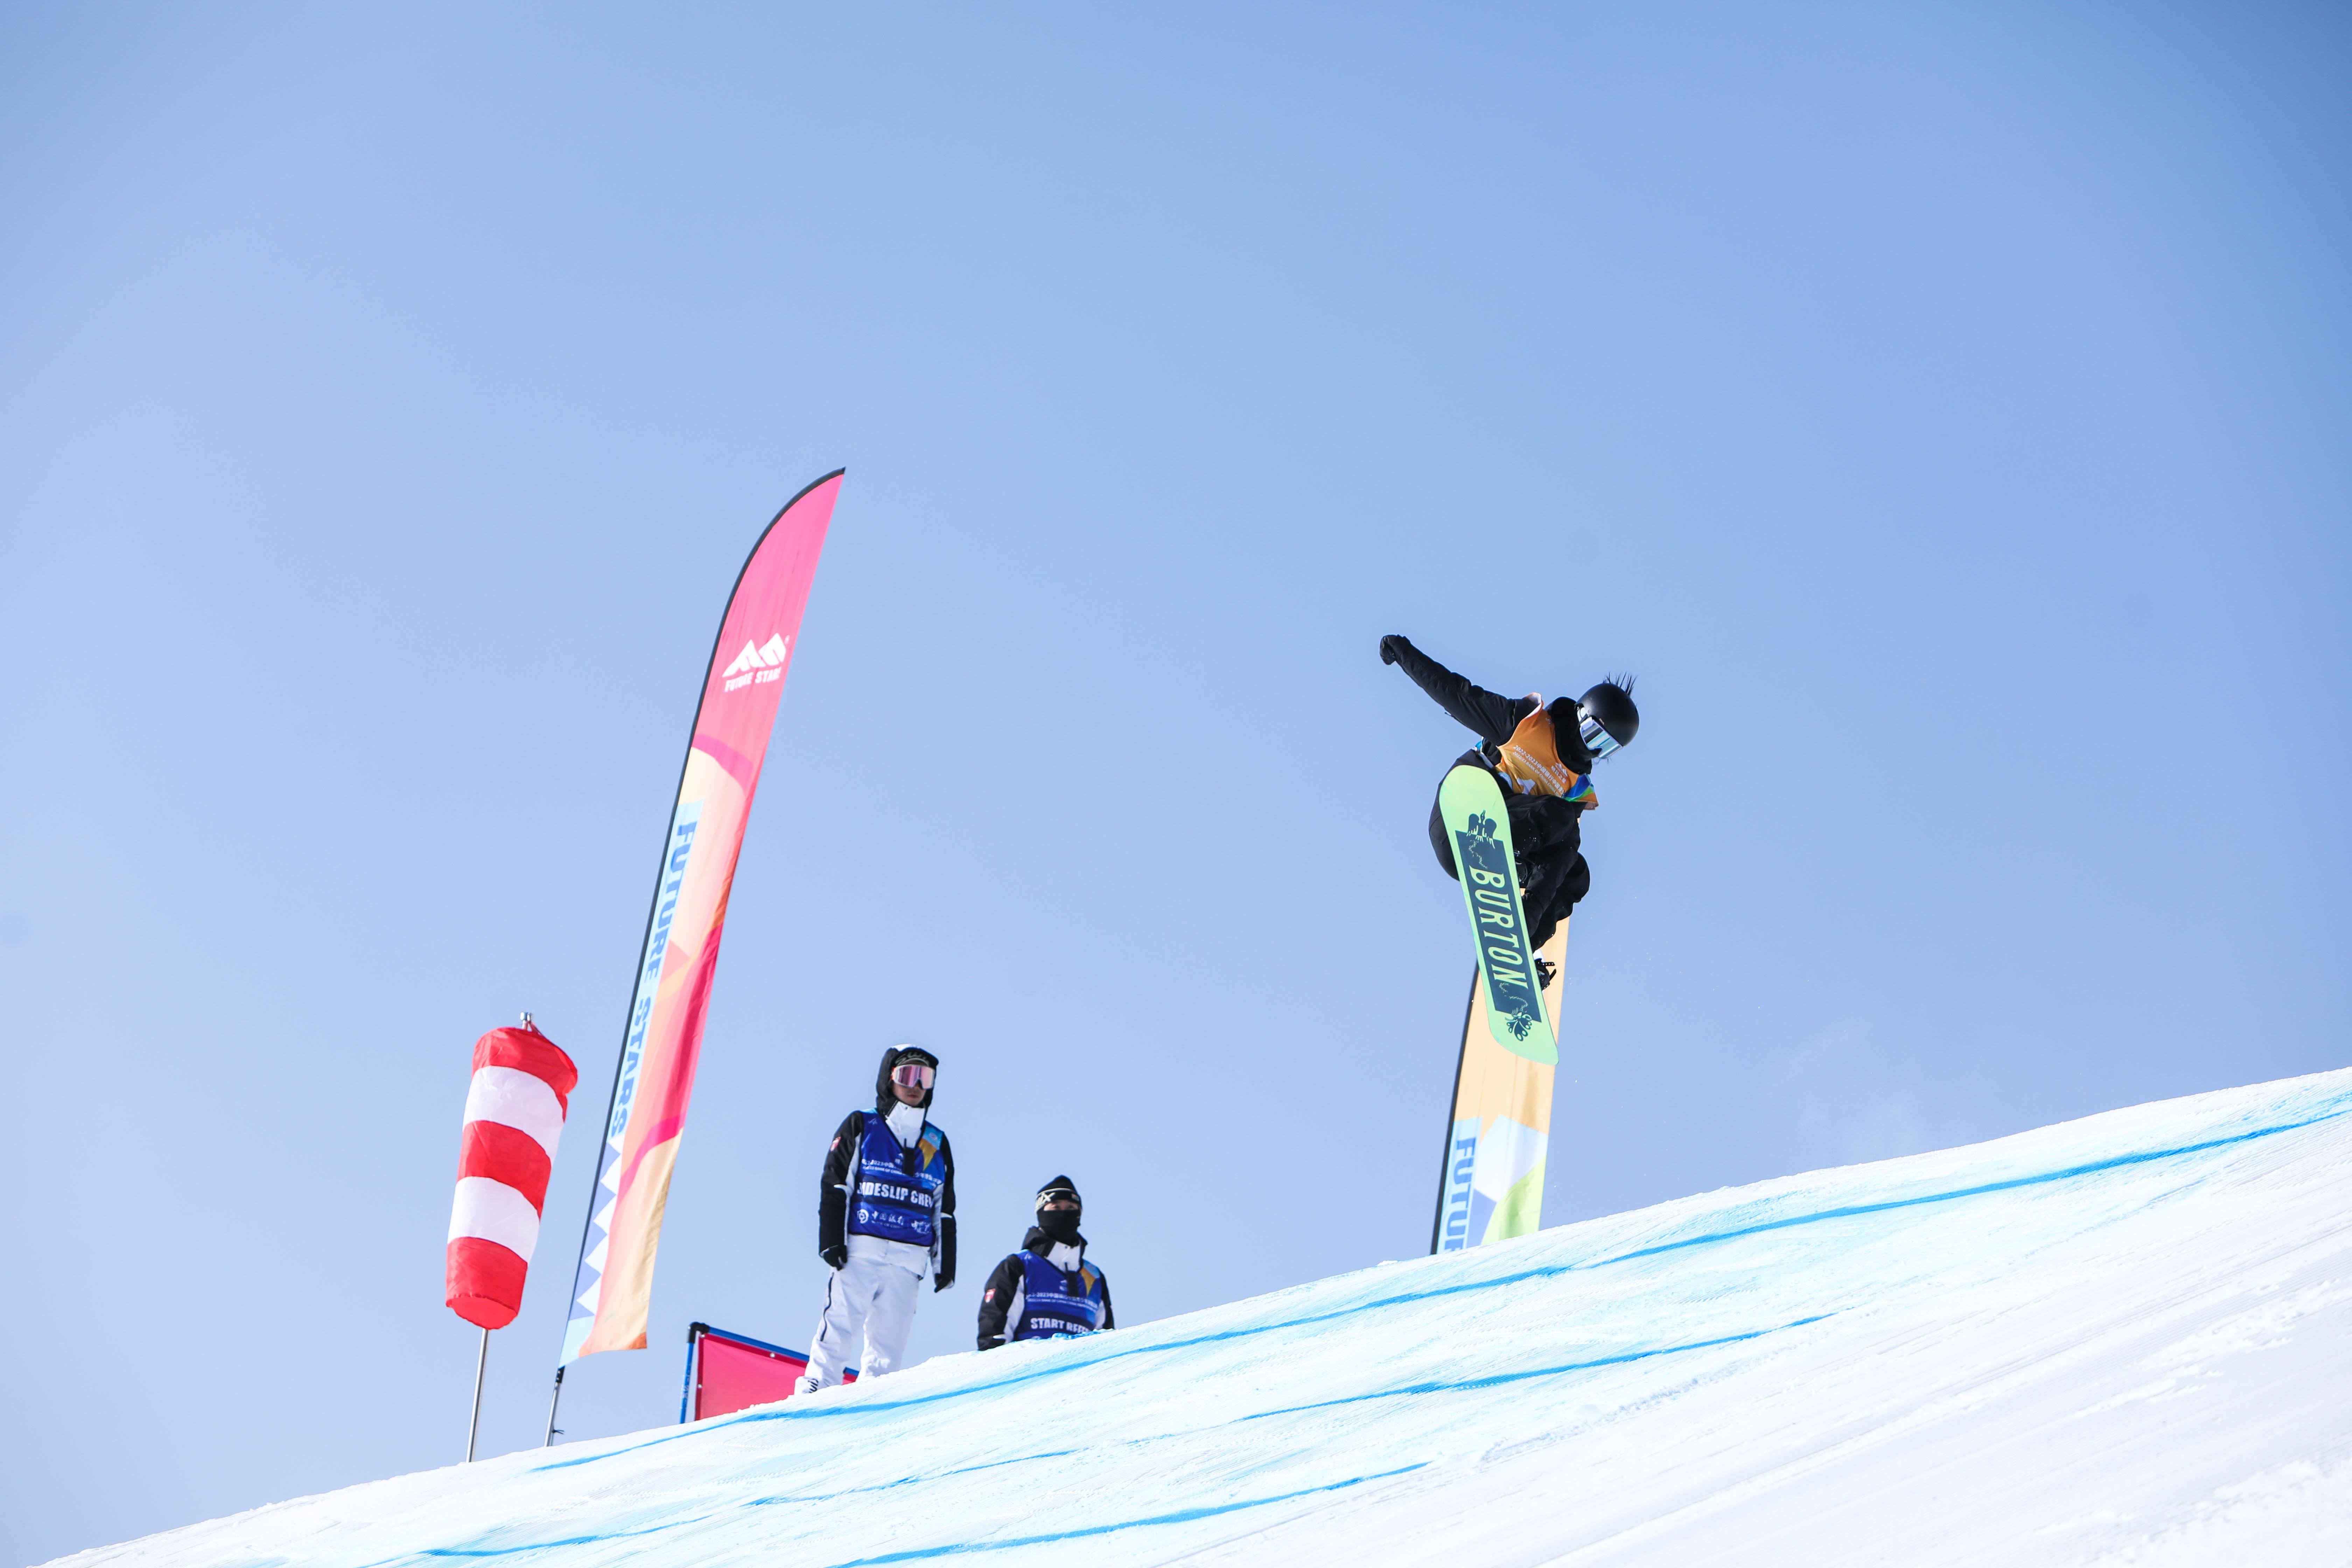 明日之星·2022-2023中国银行中国青少年滑雪公开赛北京站圆满结束